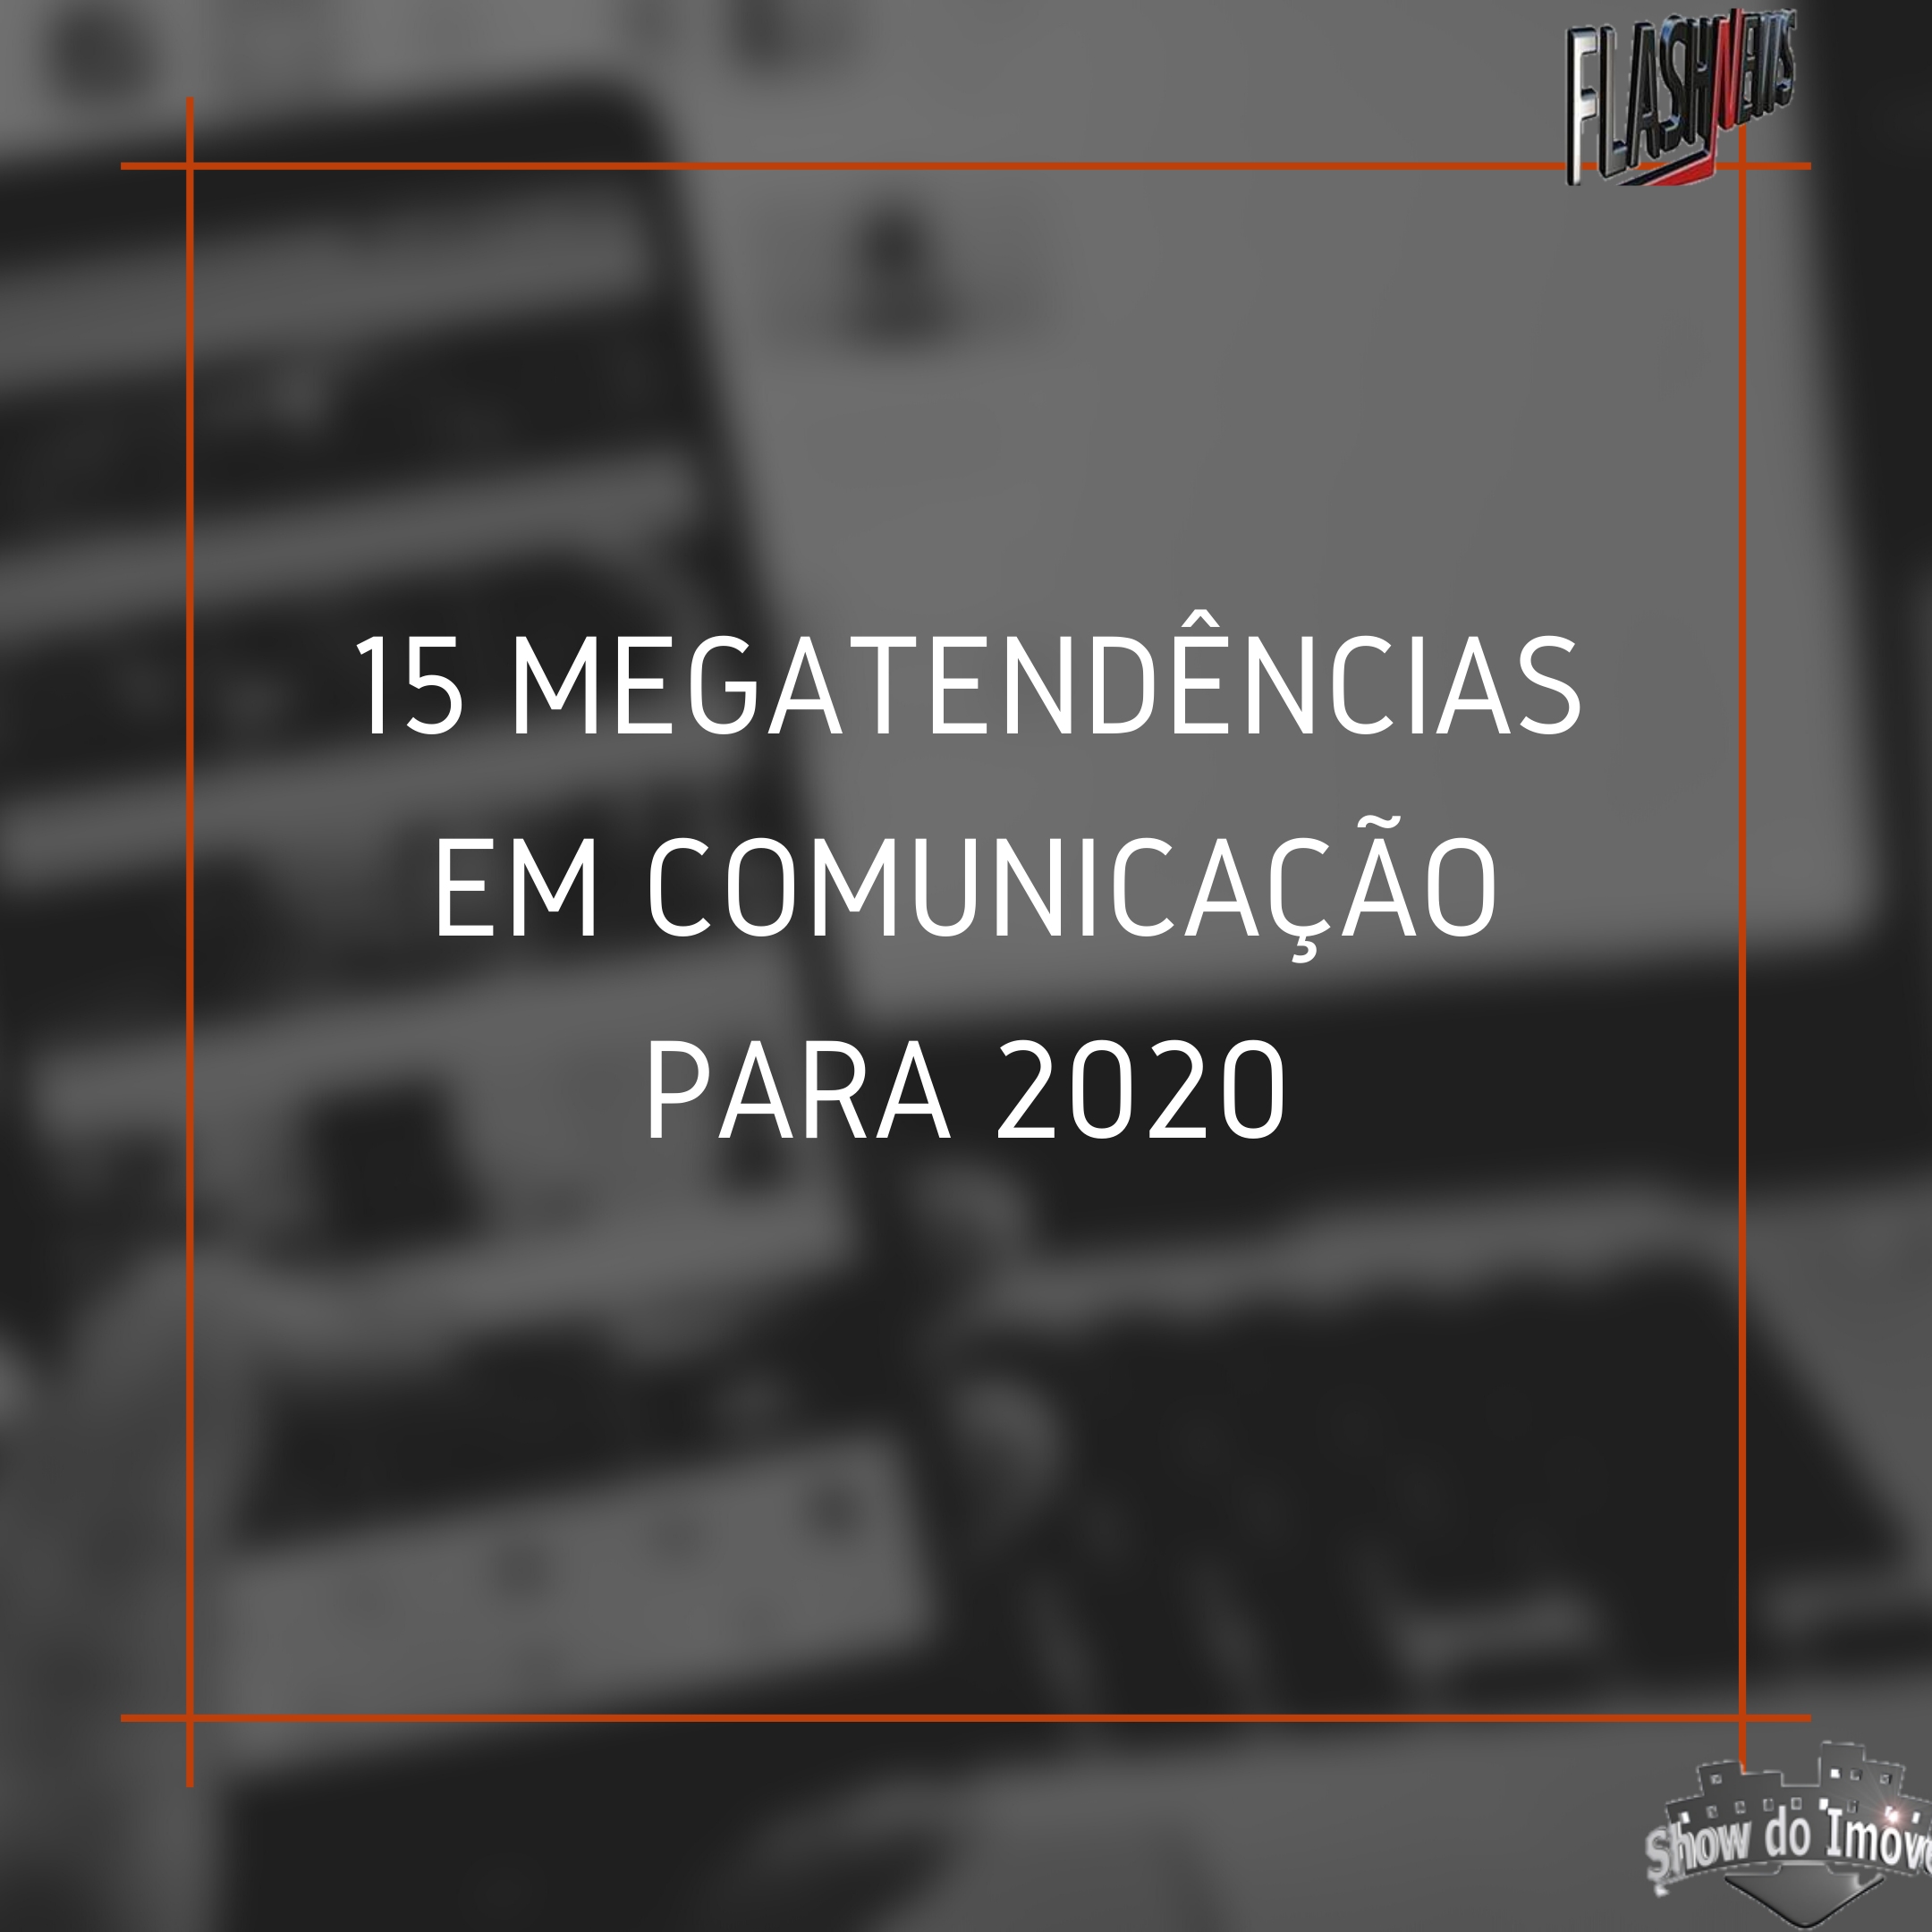 15 megatendencias de comunicação para 2020